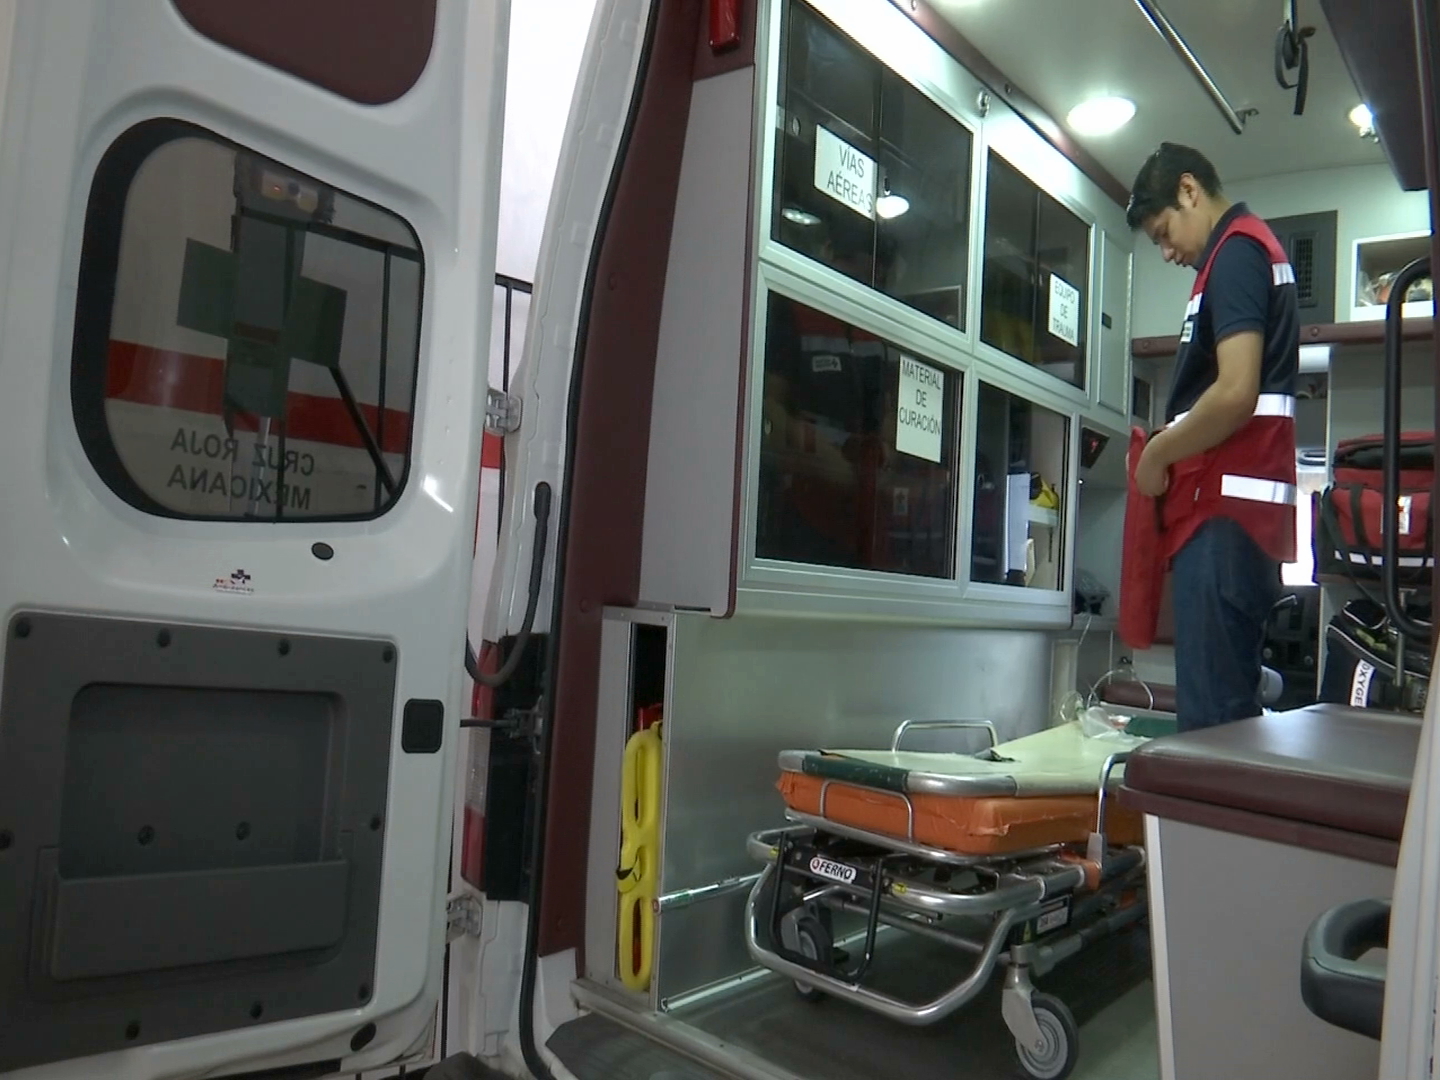 6 lesionados por uso de pirotecnia en Córdoba este mes: Cruz Roja